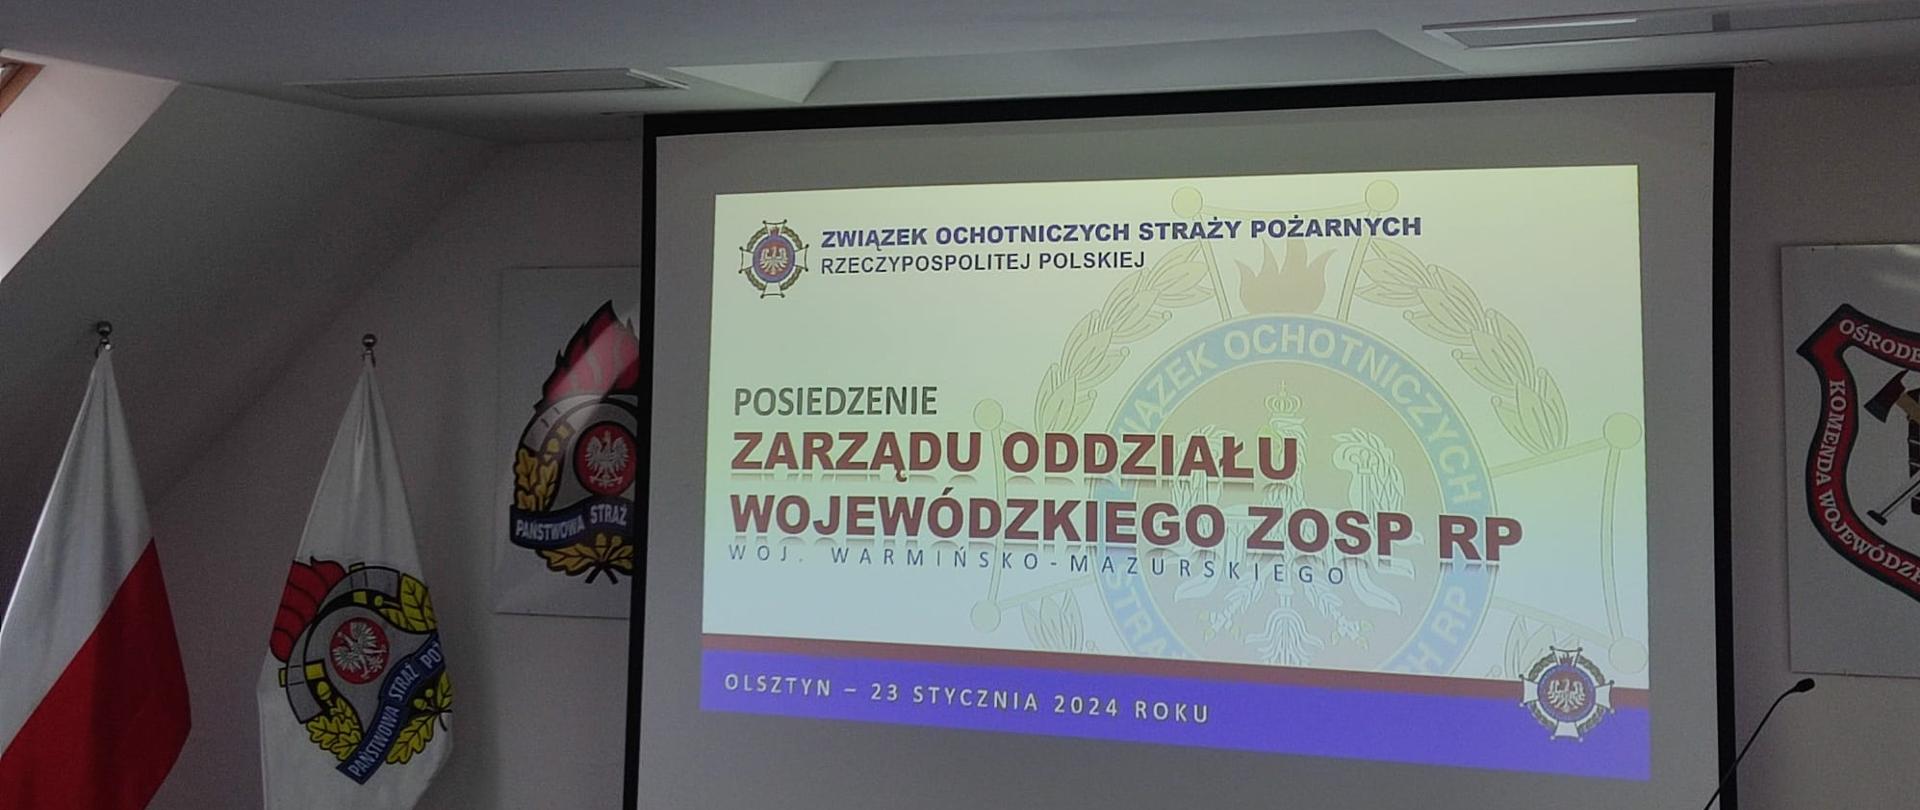 Posiedzenie Zarządu Oddziału Wojewódzkiego ZOSP RP podsumowujące rok 2023